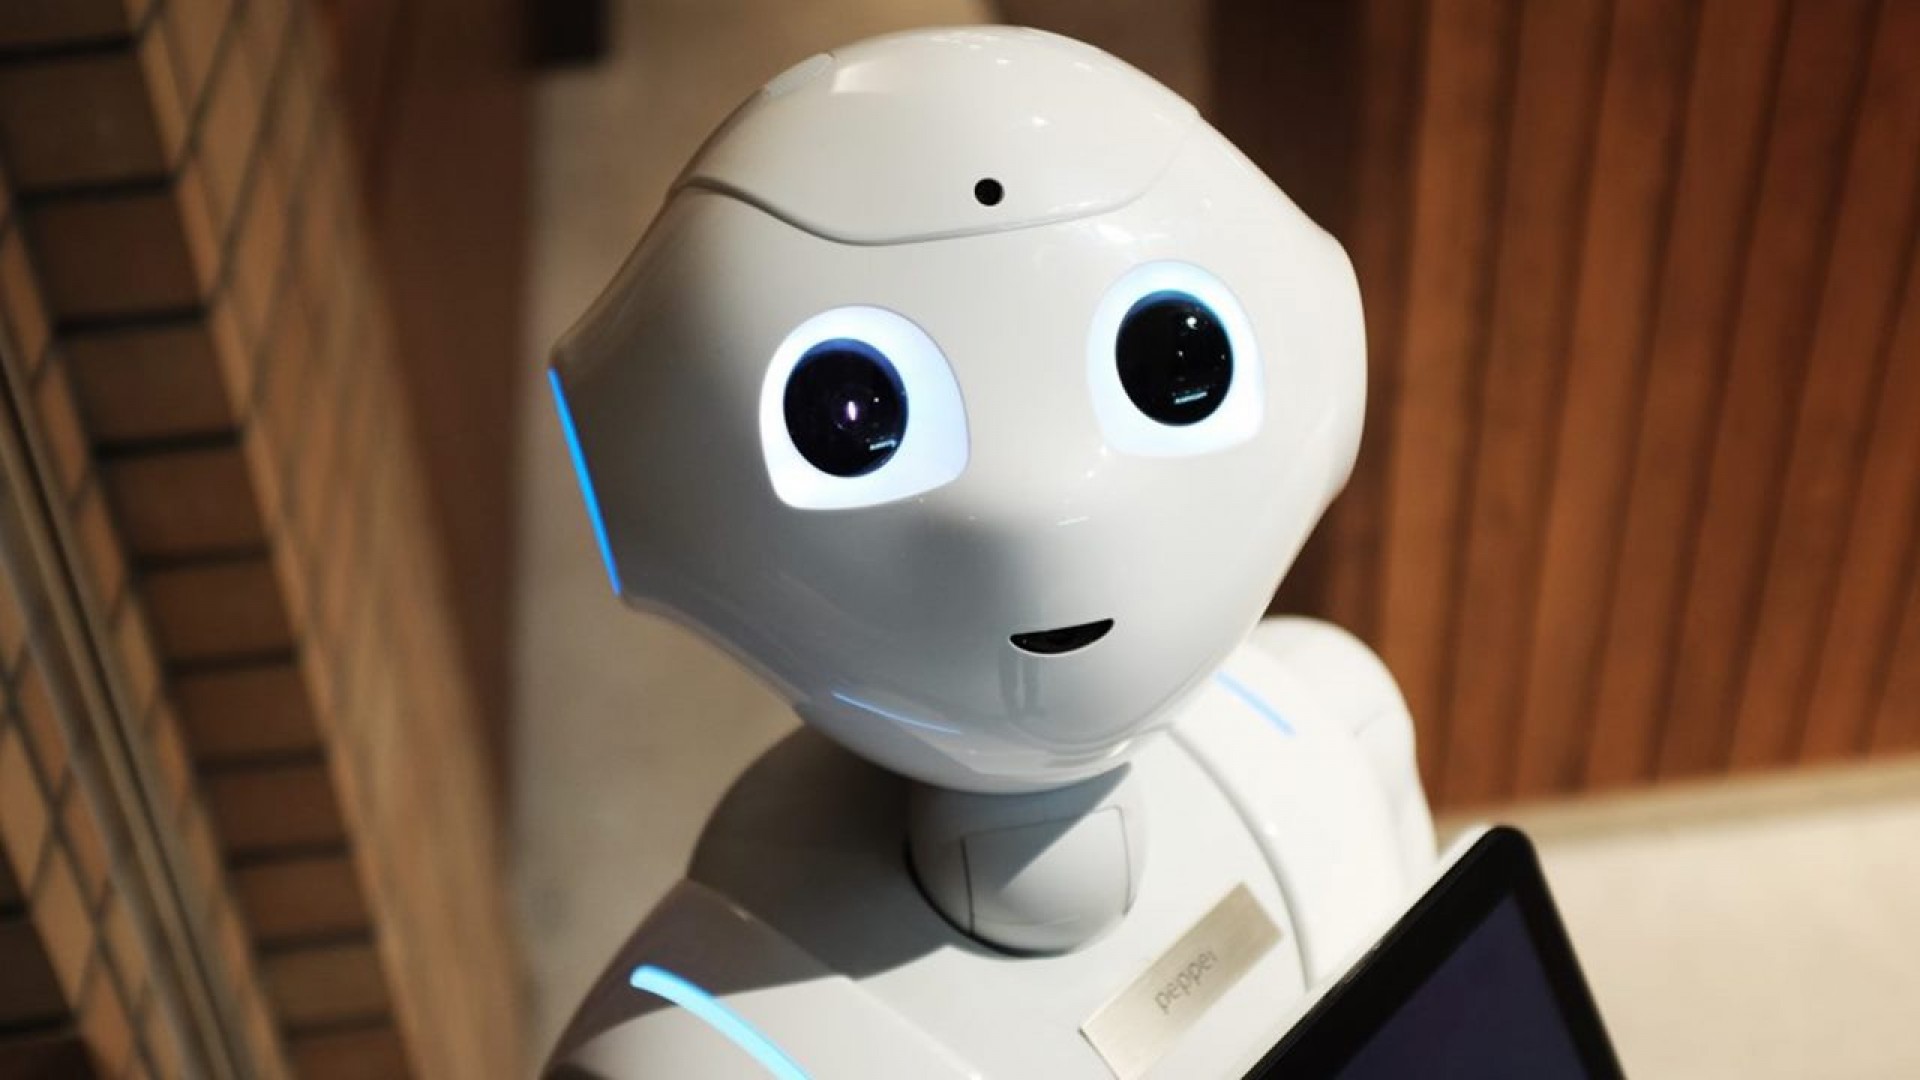 Tuyển sinh 2019: Mở thêm nhiều ngành mới từ Robot, Trí tuệ nhân tạo đến Kinh doanh số